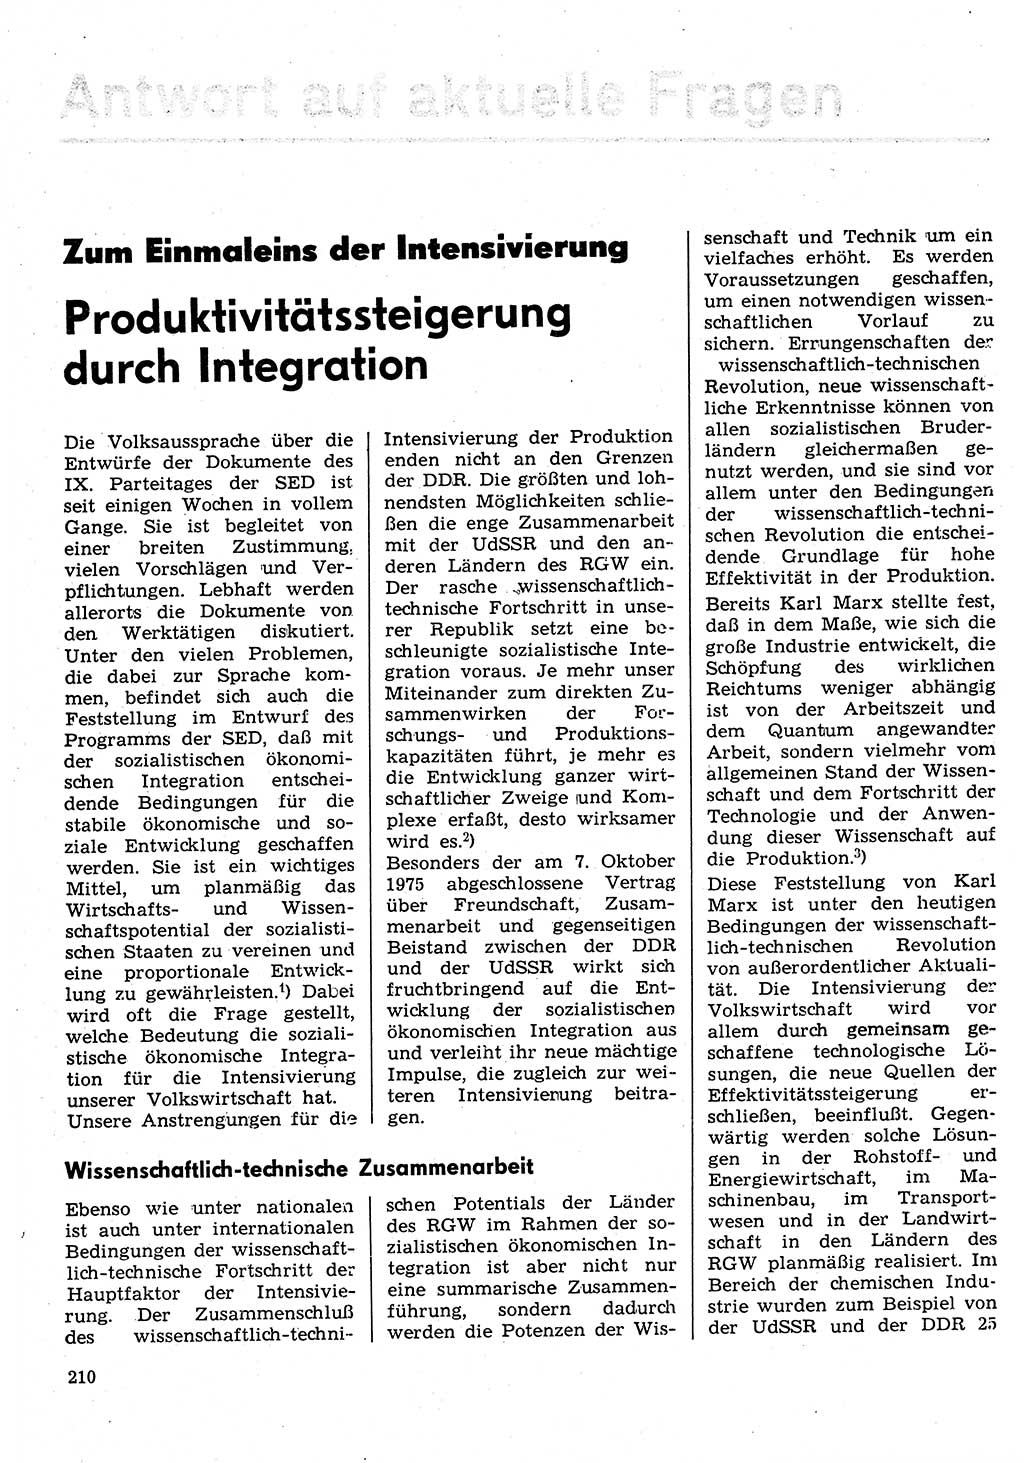 Neuer Weg (NW), Organ des Zentralkomitees (ZK) der SED (Sozialistische Einheitspartei Deutschlands) für Fragen des Parteilebens, 31. Jahrgang [Deutsche Demokratische Republik (DDR)] 1976, Seite 210 (NW ZK SED DDR 1976, S. 210)